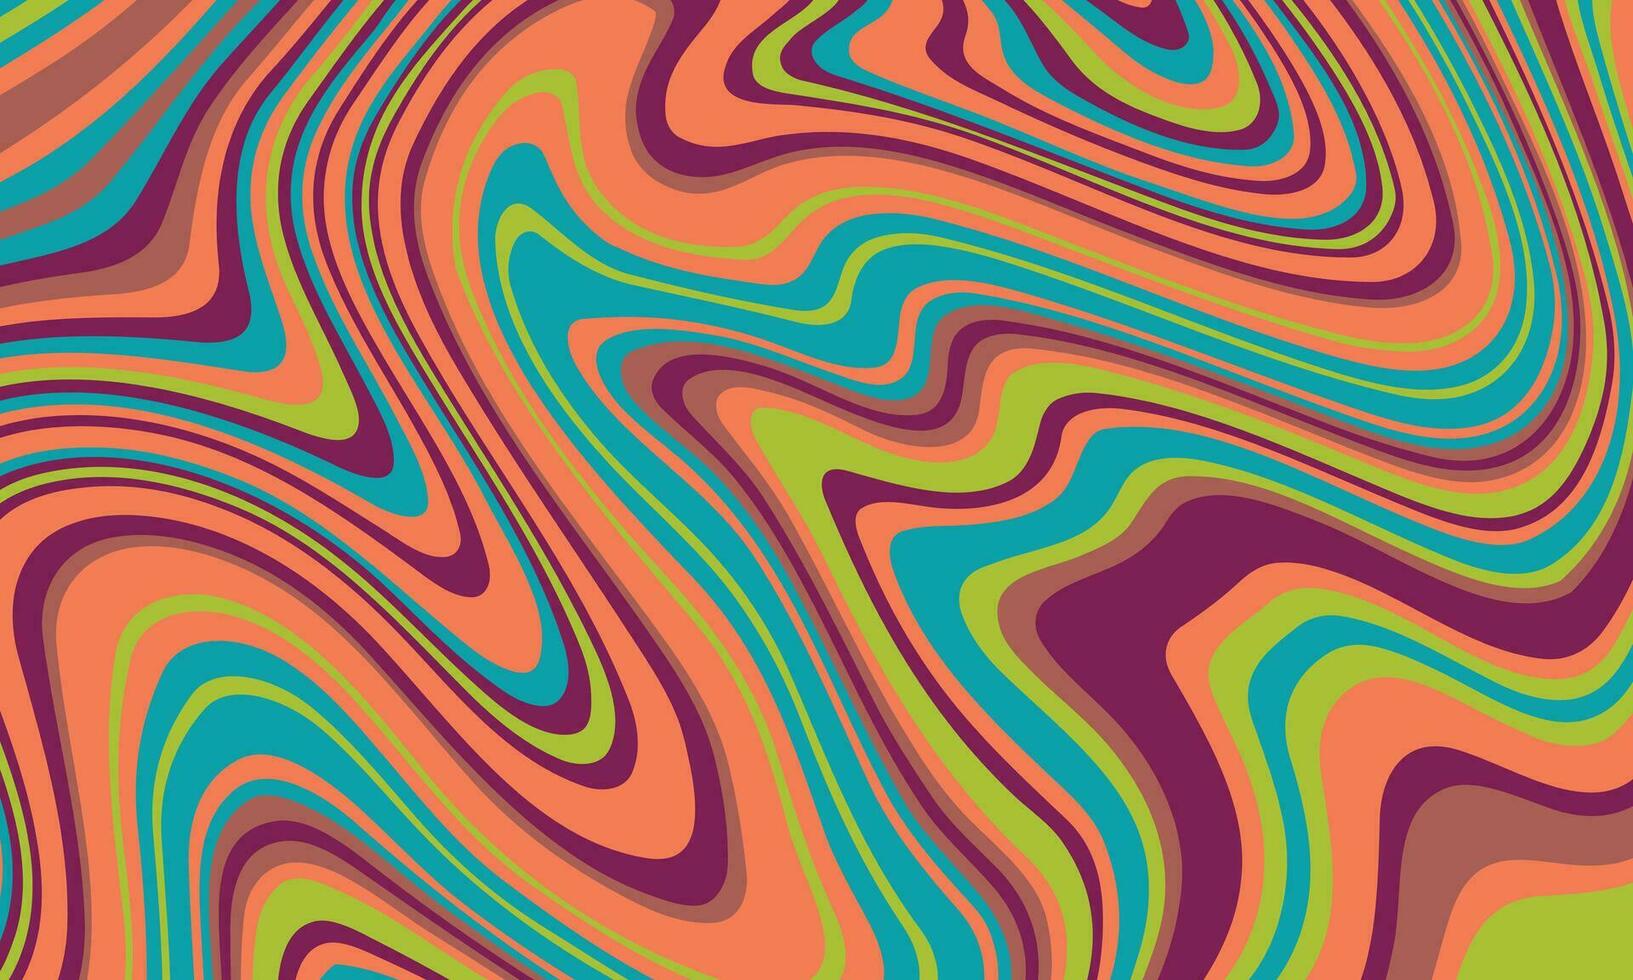 psychedelic häftig bakgrund. färgrik abstrakt bakgrund. vektor